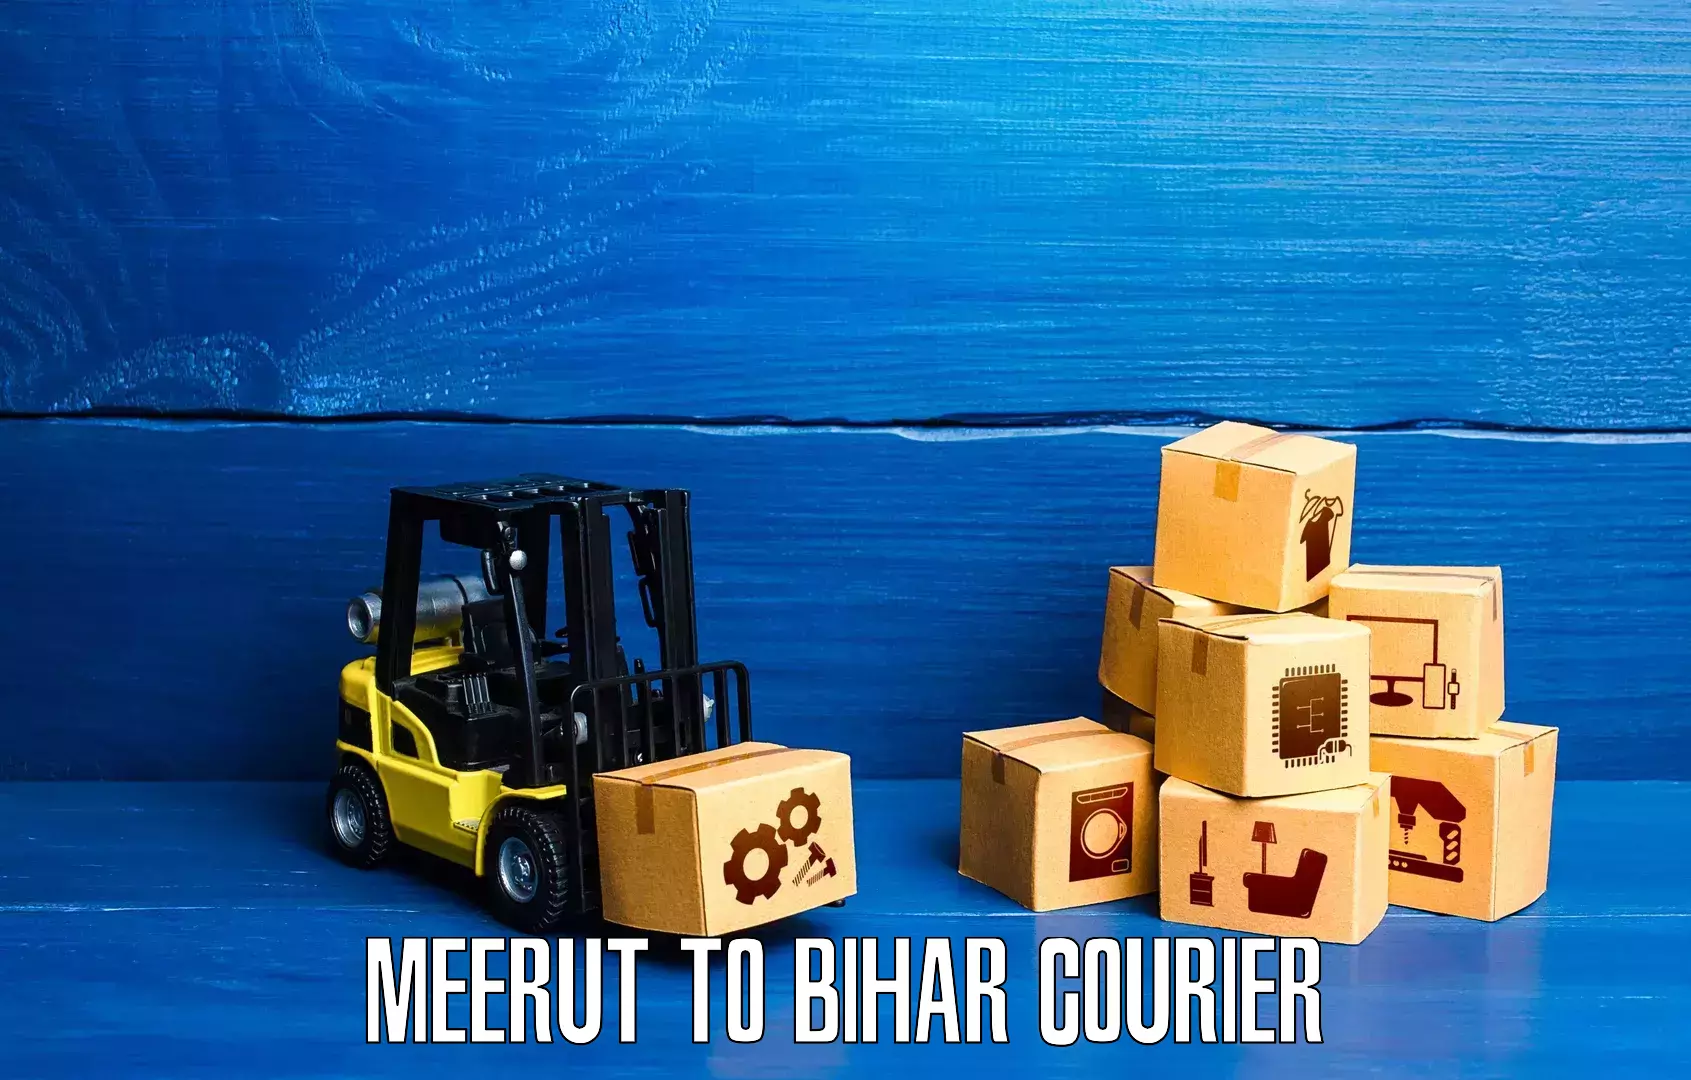 Courier service partnerships Meerut to Bihar